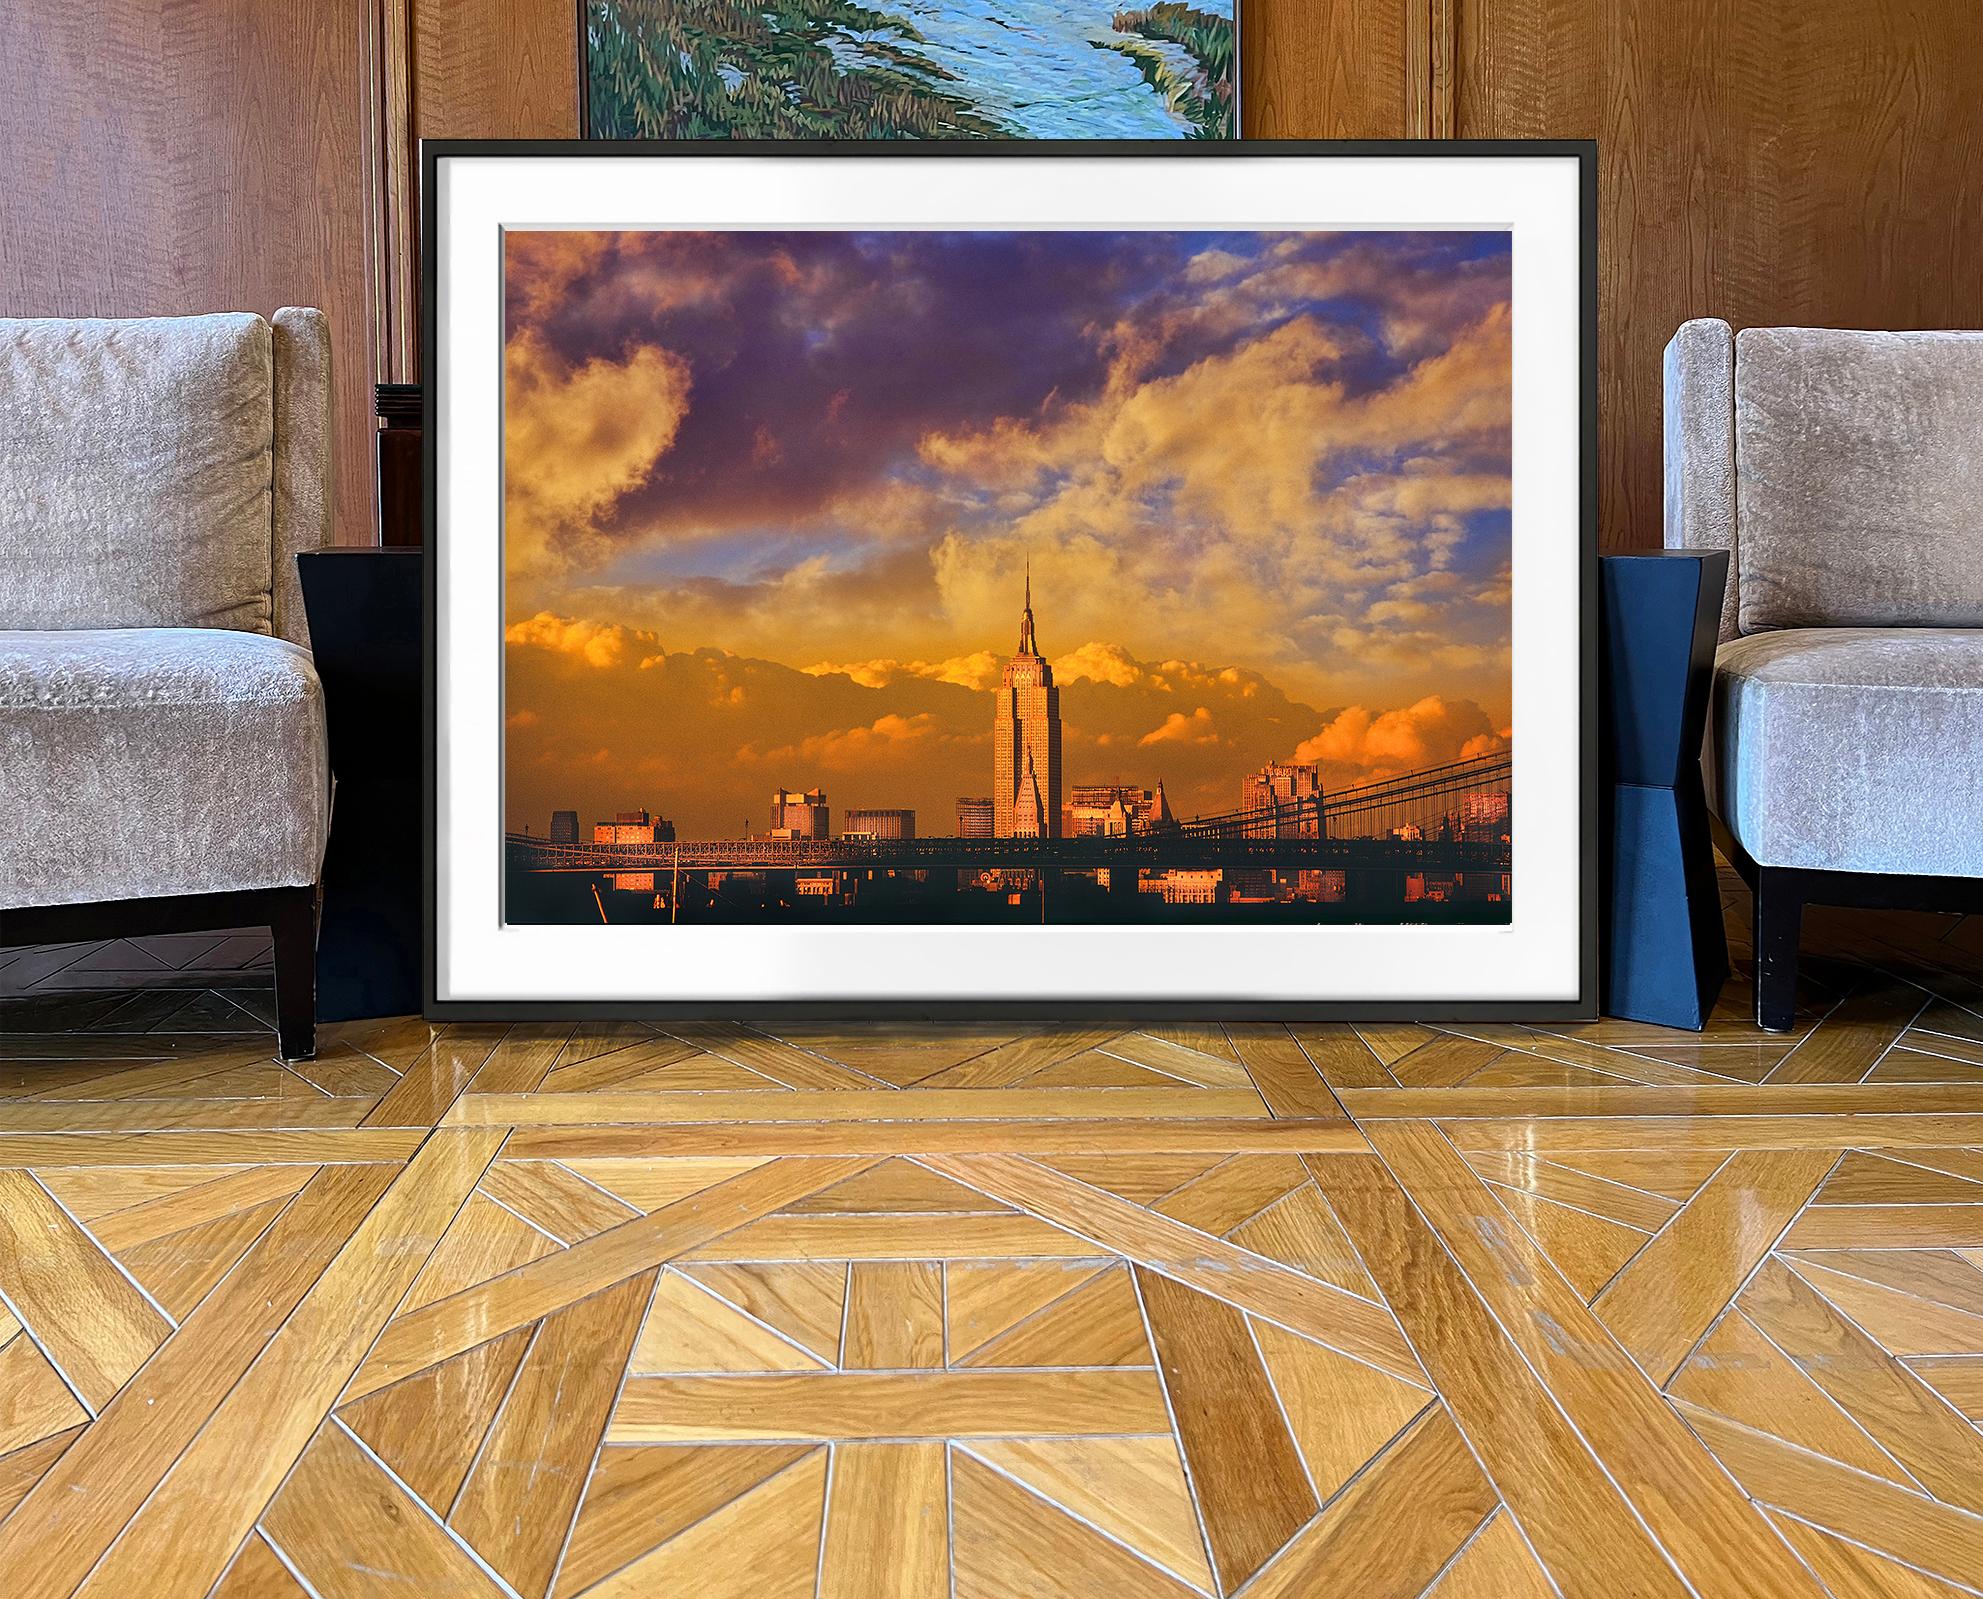 Das goldene Licht des späten Nachmittags taucht das majestätische Empire State Building in leuchtende Farben, während es den dramatischen Himmel durchdringt. Dieses Bild ist nicht nur atemberaubend in seiner visuellen Schönheit, sondern auch ein